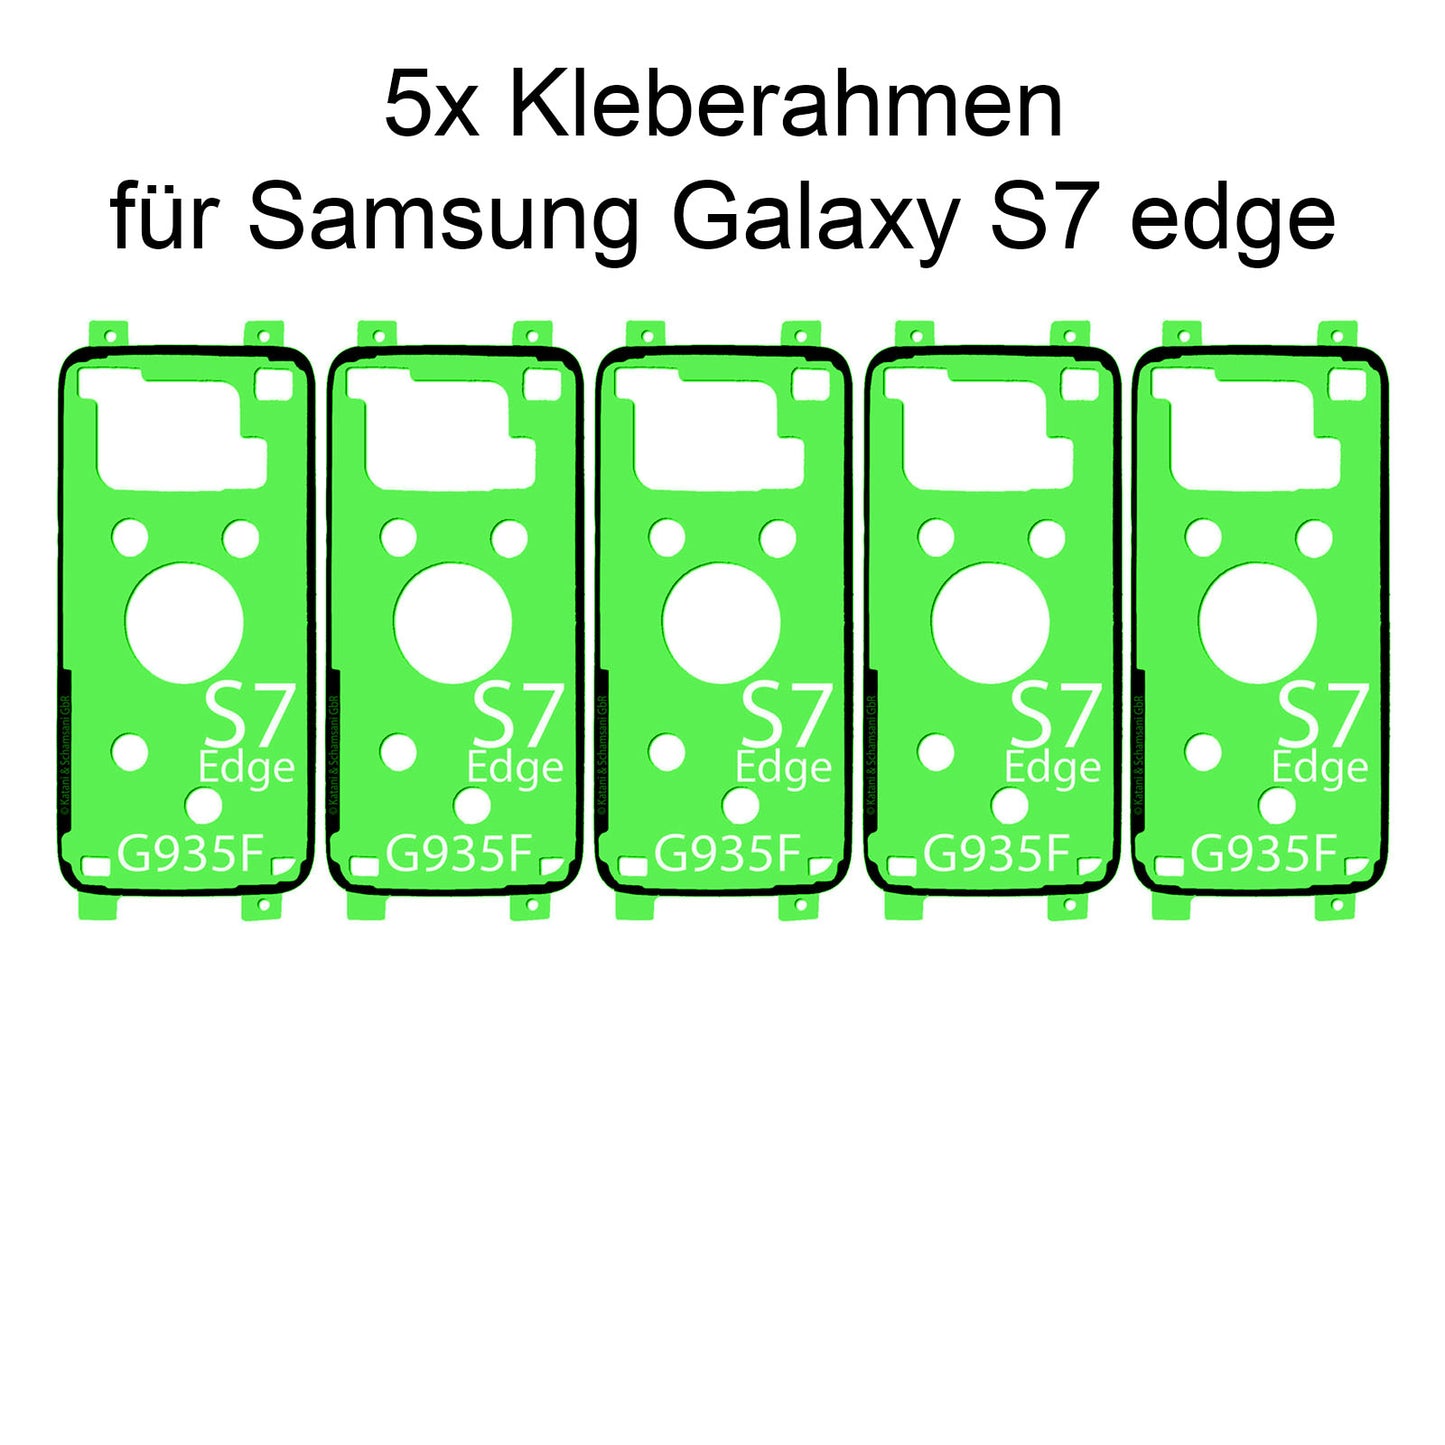 Reparieren Sie Ihr Samsung Galaxy A5 2017 mit unserem hochwertigen Rahmenkleber und Klebepad Adhesive. Einfache Anwendung und zuverlässige Haltekraft. Jetzt bei Dinngs.de entdecken.